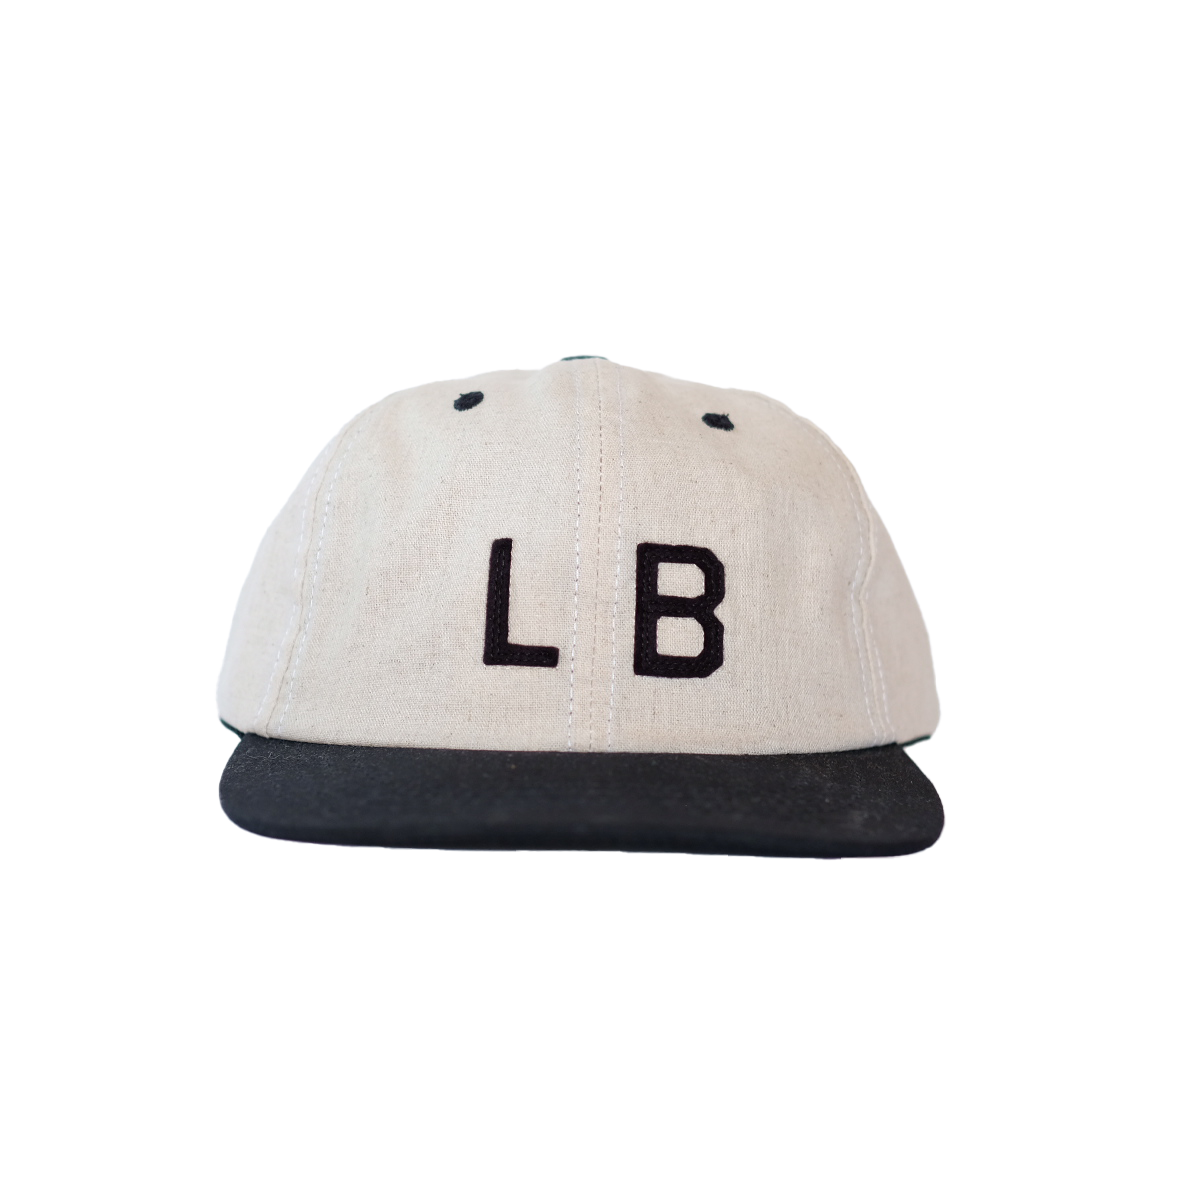 PORT LB + Y108 PARKER CAP BLK